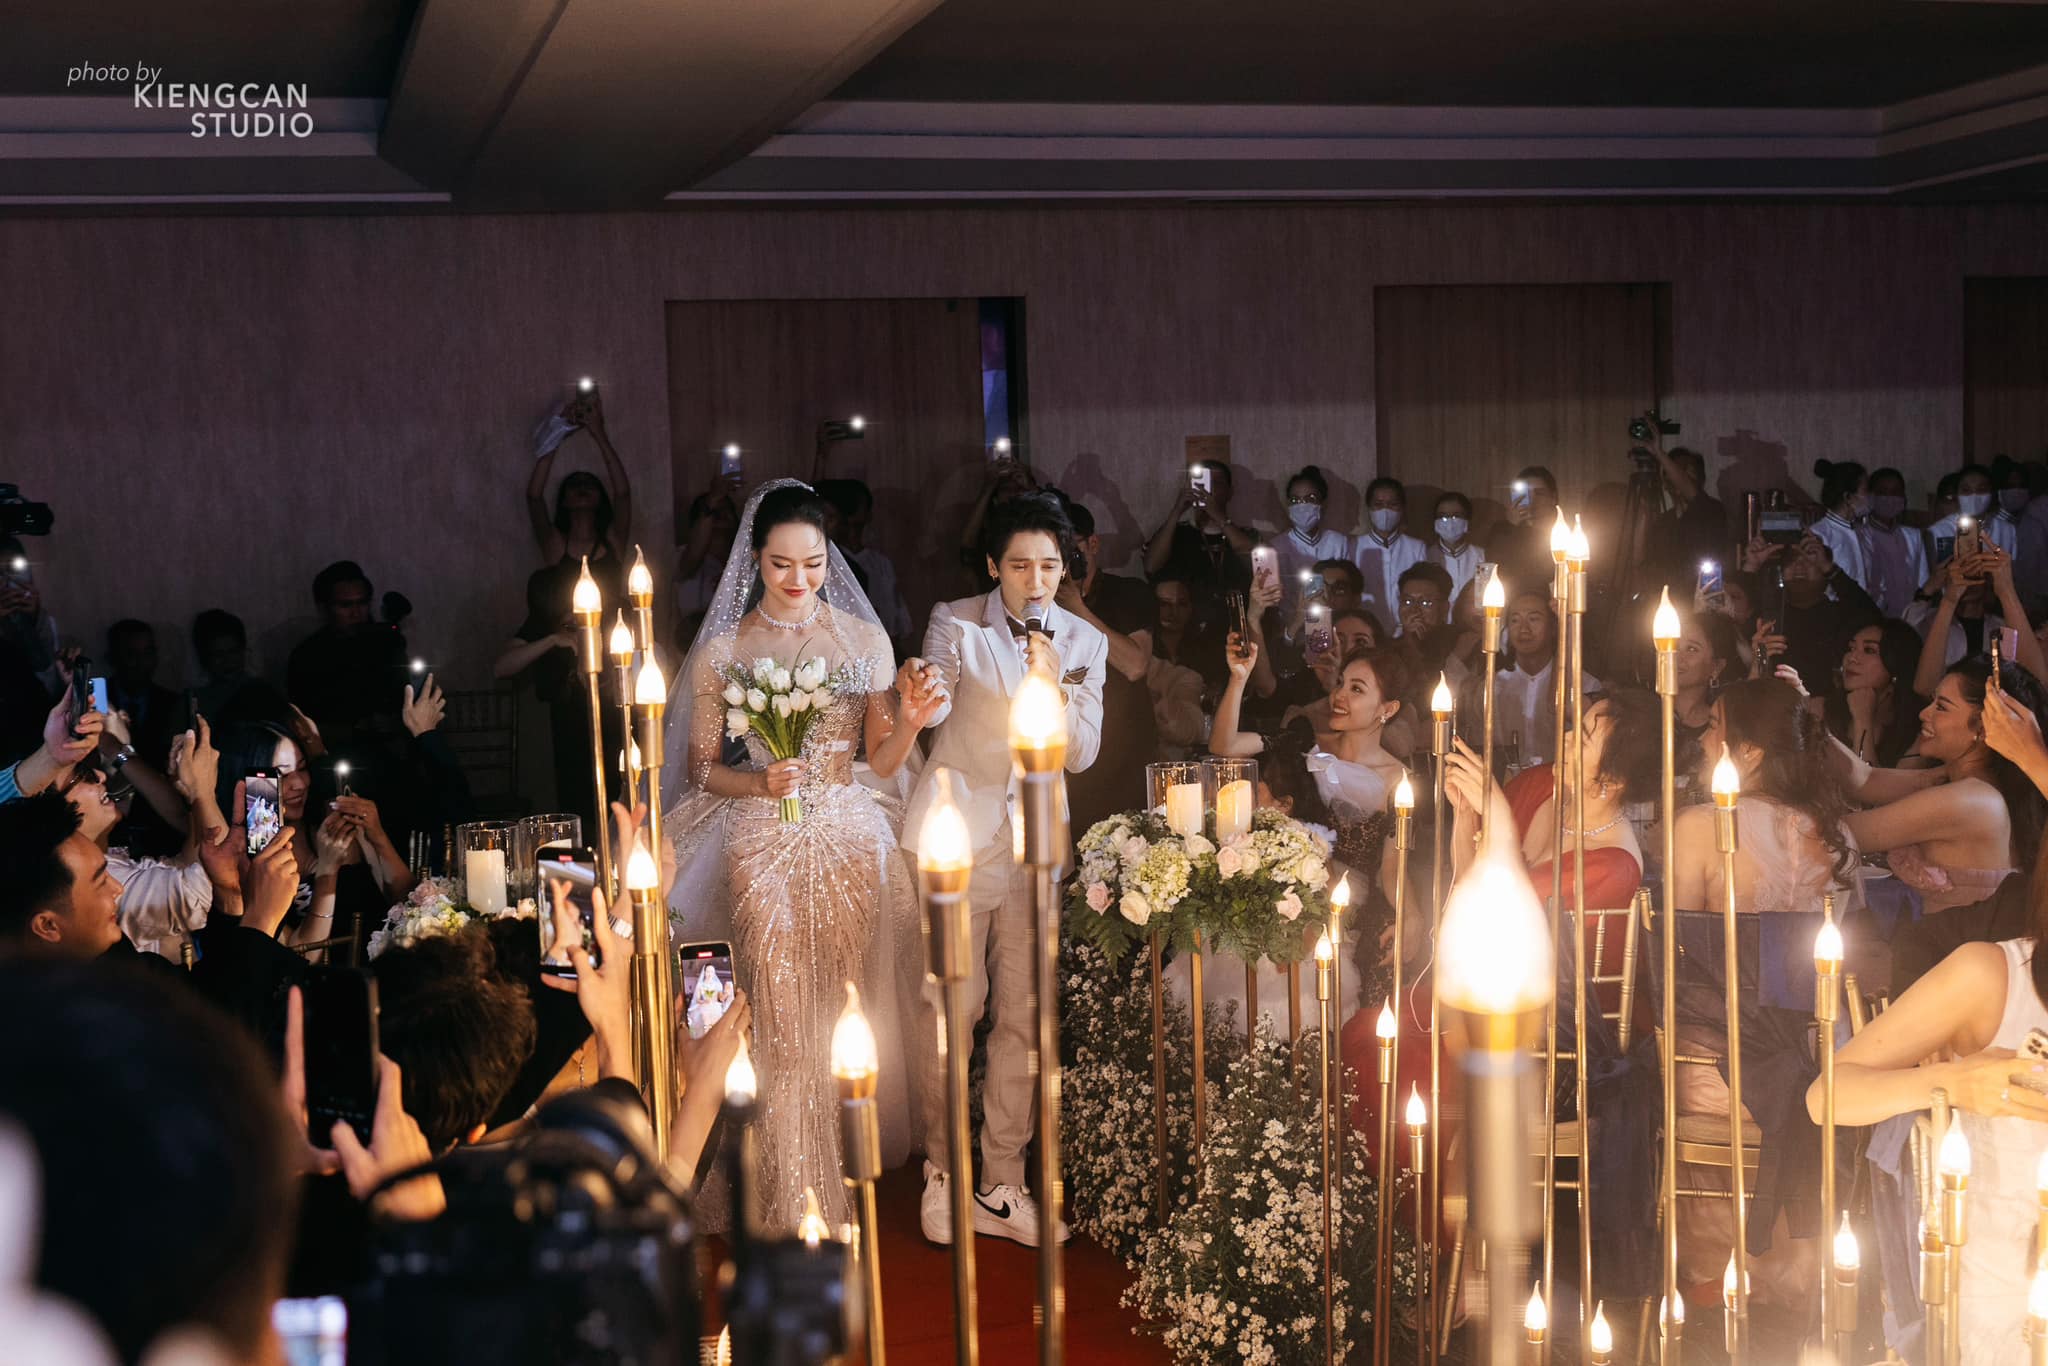 Hoa hậu Kiều Ngân bật khóc khi chồng quỳ gối cầu hôn trong lễ cưới- Ảnh 2.